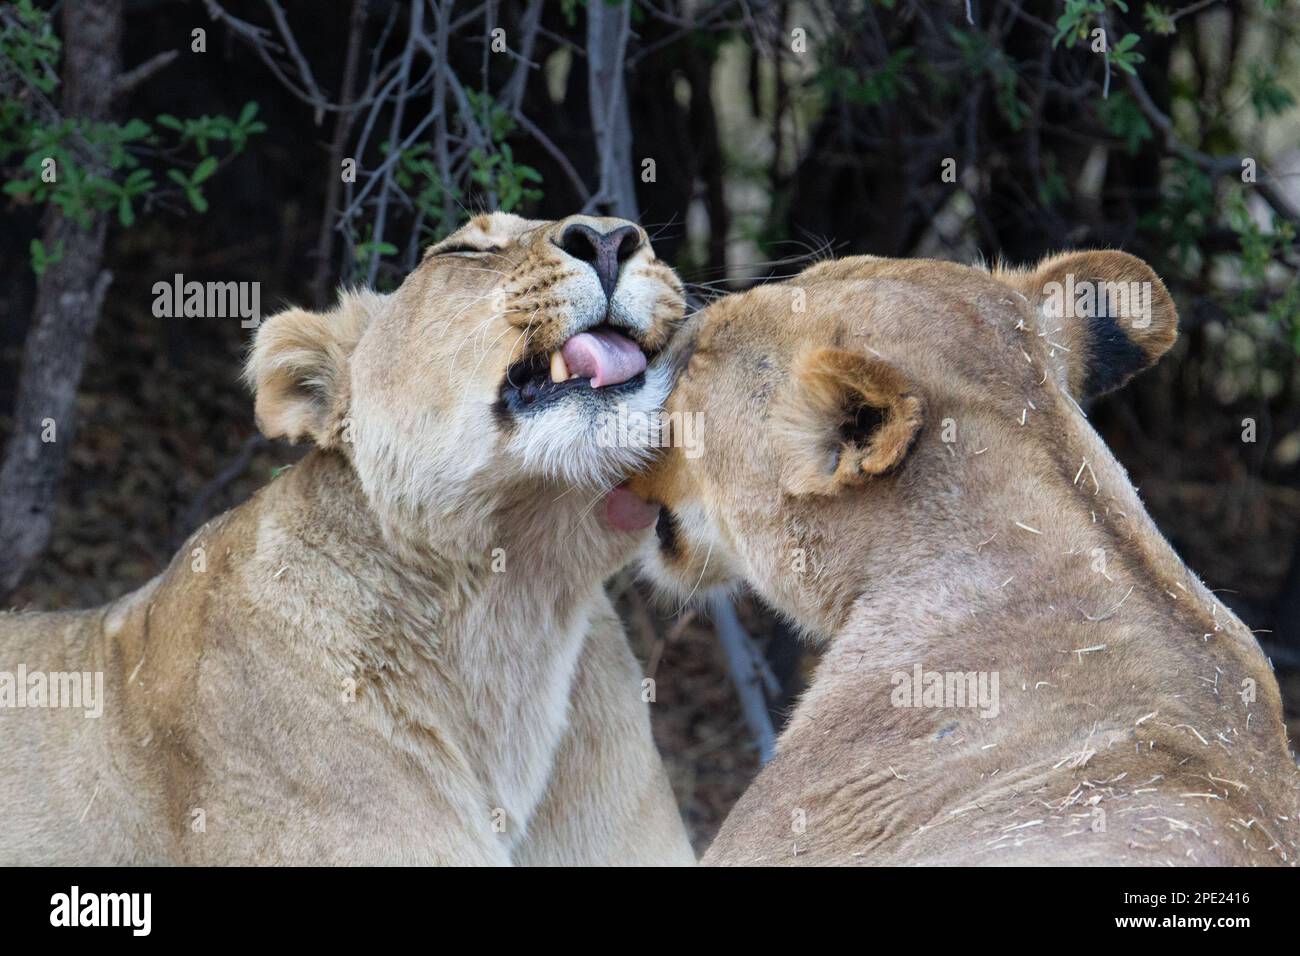 2 Löwen, Panthera leo, Porträt, beide Tiere sind intim. 1 Tier leckt das Gesicht, Kopf des anderen Weibchens. Okavango Delta, Botsuana, Afrika Stockfoto